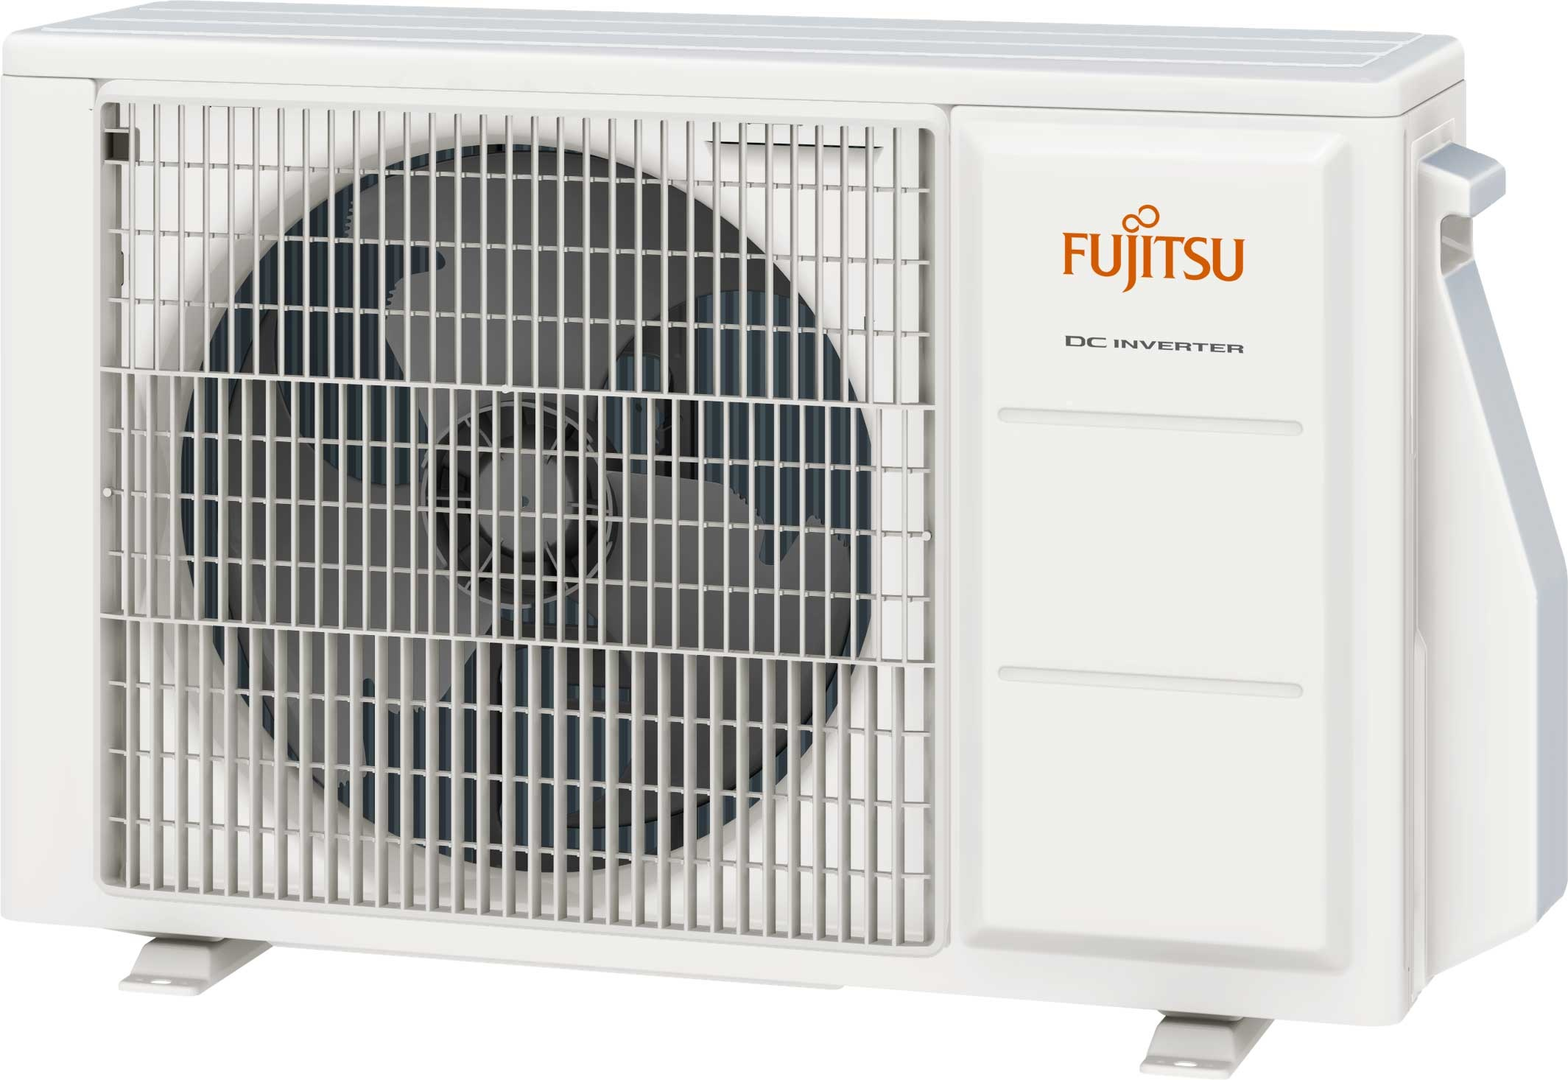 Fujitsu-airconditioner